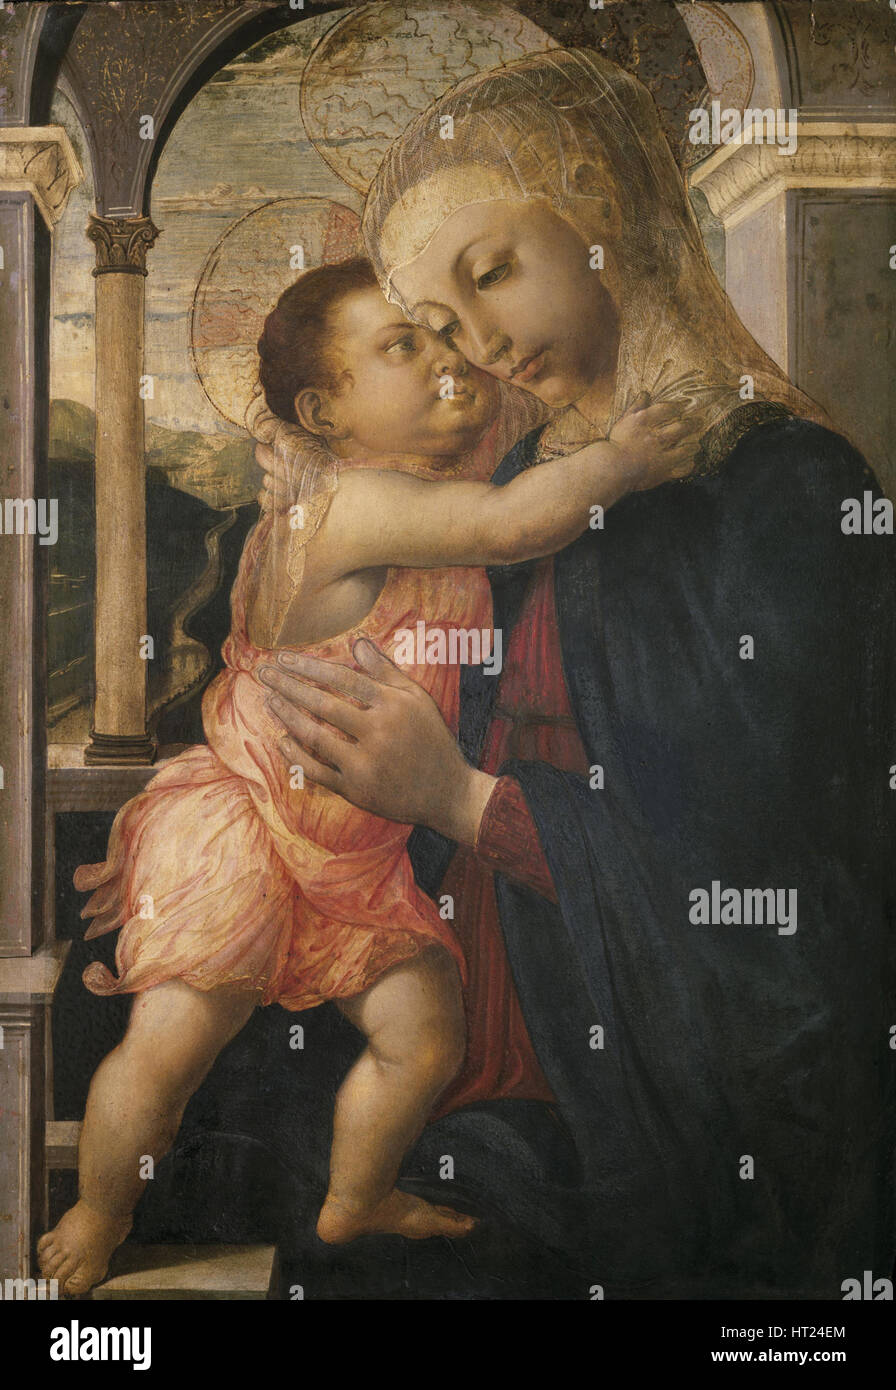 La Madonna e il Bambino, 1466-1467 ca. Artista: Botticelli, Sandro (1445-1510) Foto Stock